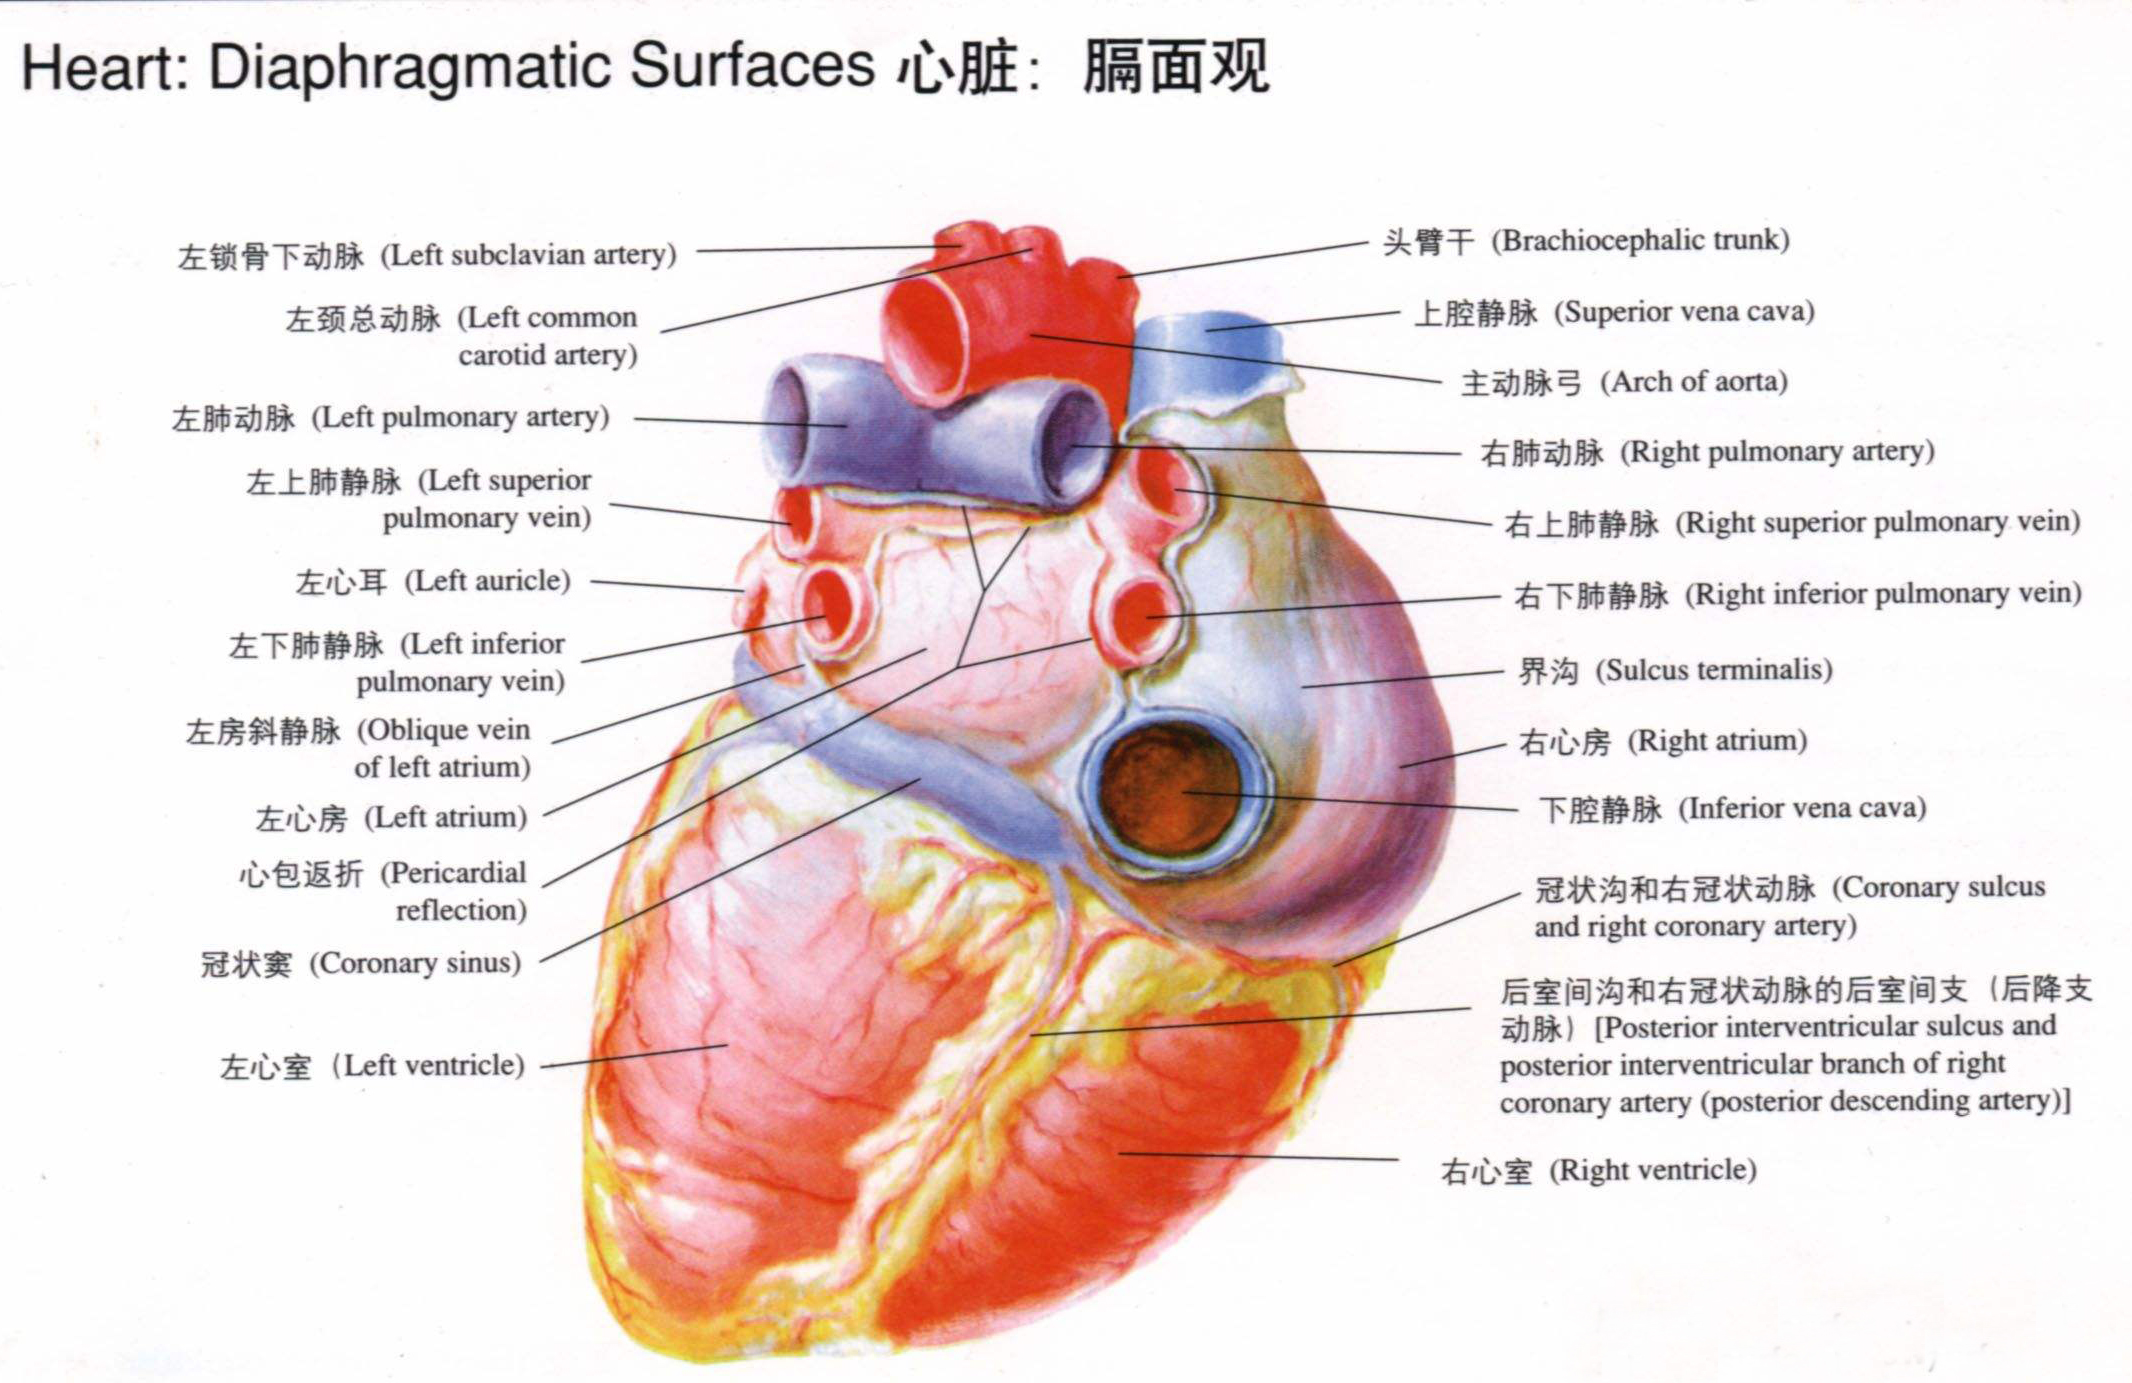 القلب الوعائي, وعاء دموي, جسم الإنسان, قلب PNG وملف PSD للتحميل مجانا